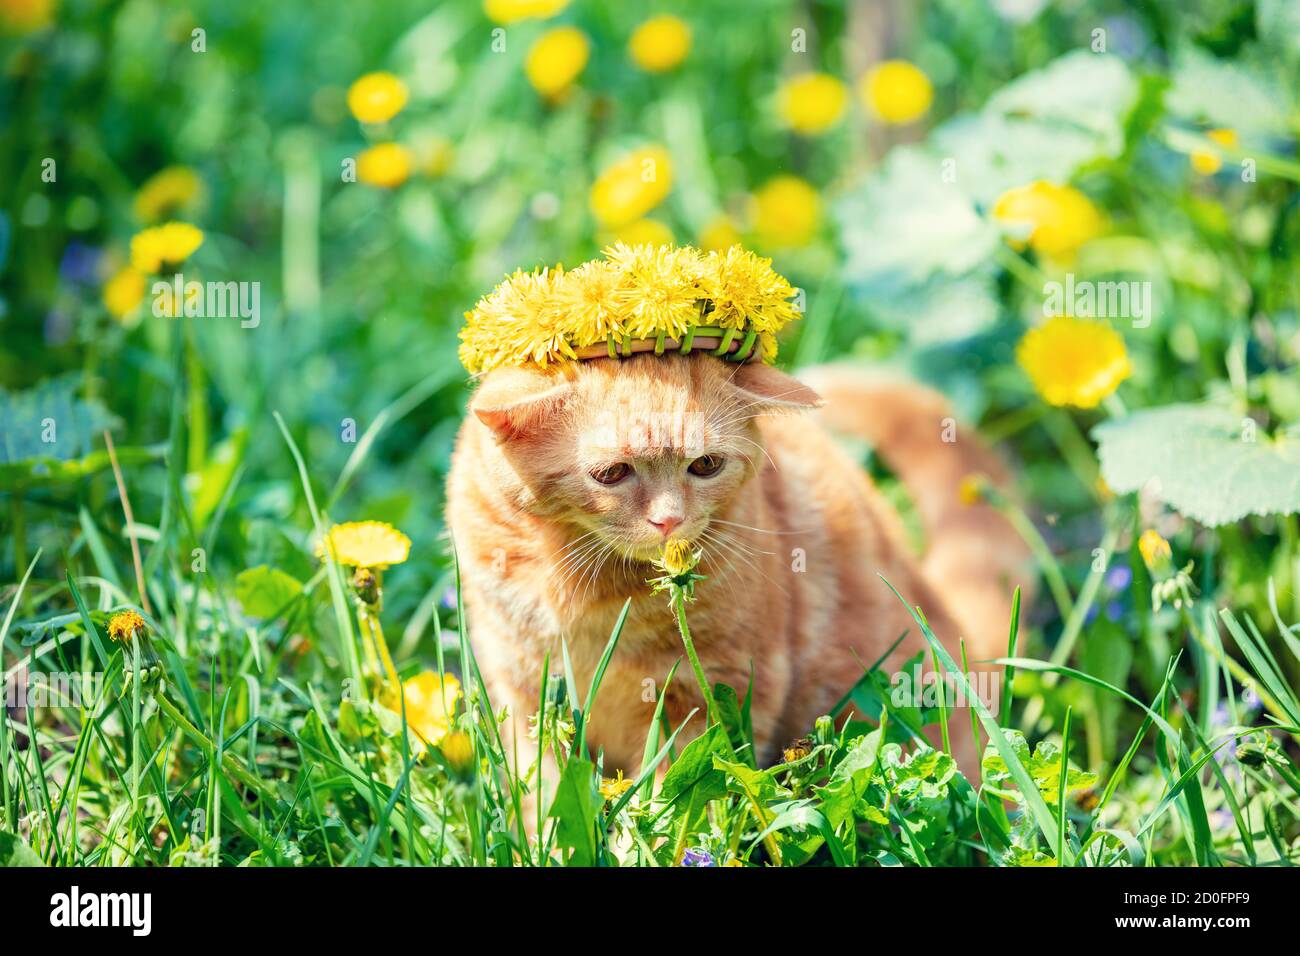 Funny little ginger kitten in a wreath of dandelion flowers walks on the lawn of dandelions Stock Photo